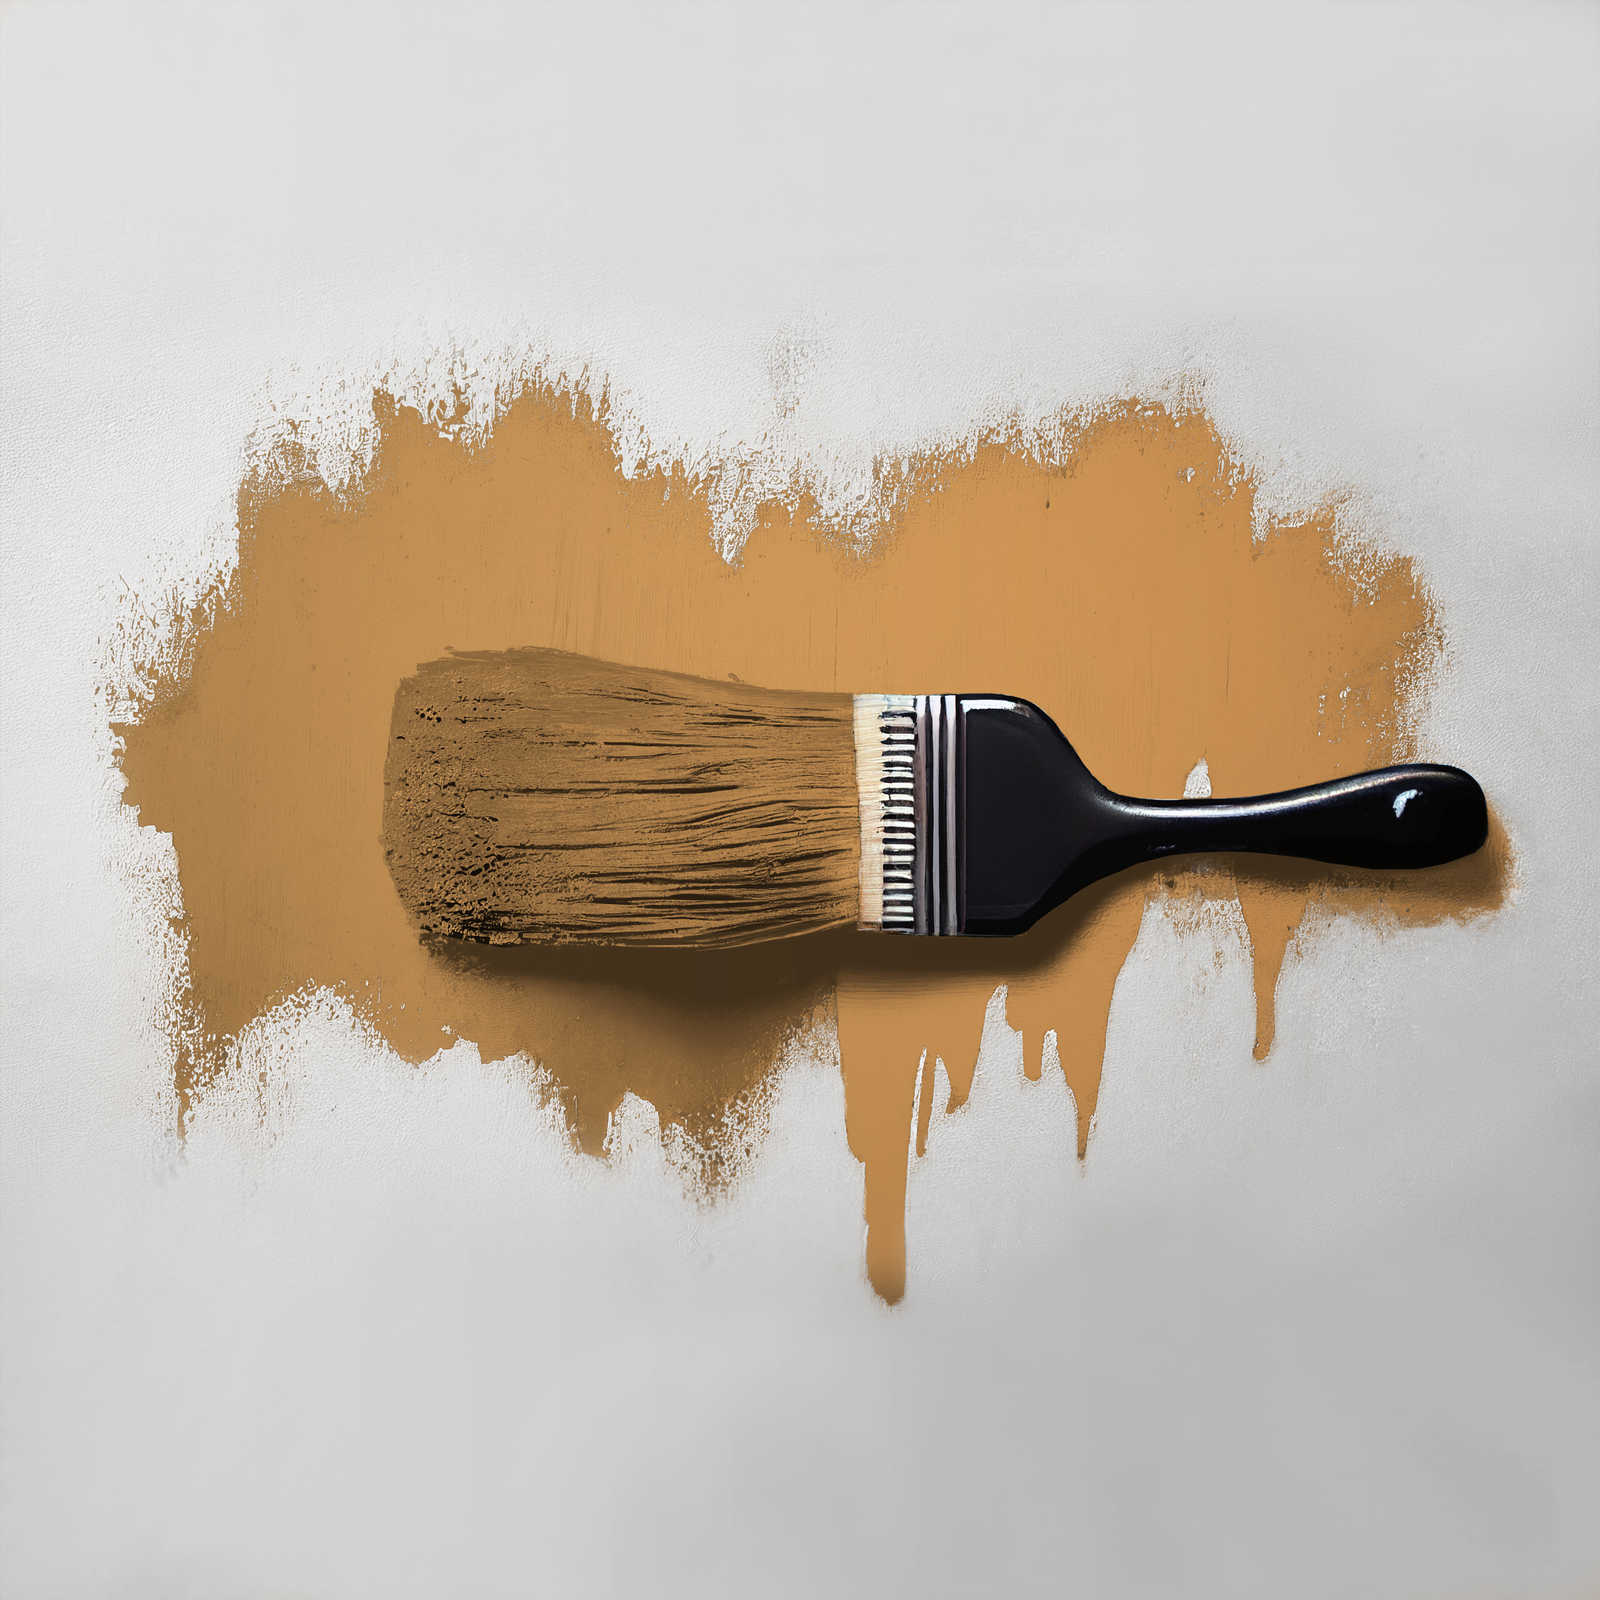             Pintura mural TCK5007 »Salted Caramel« en caramelo intenso – 2,5 litro
        